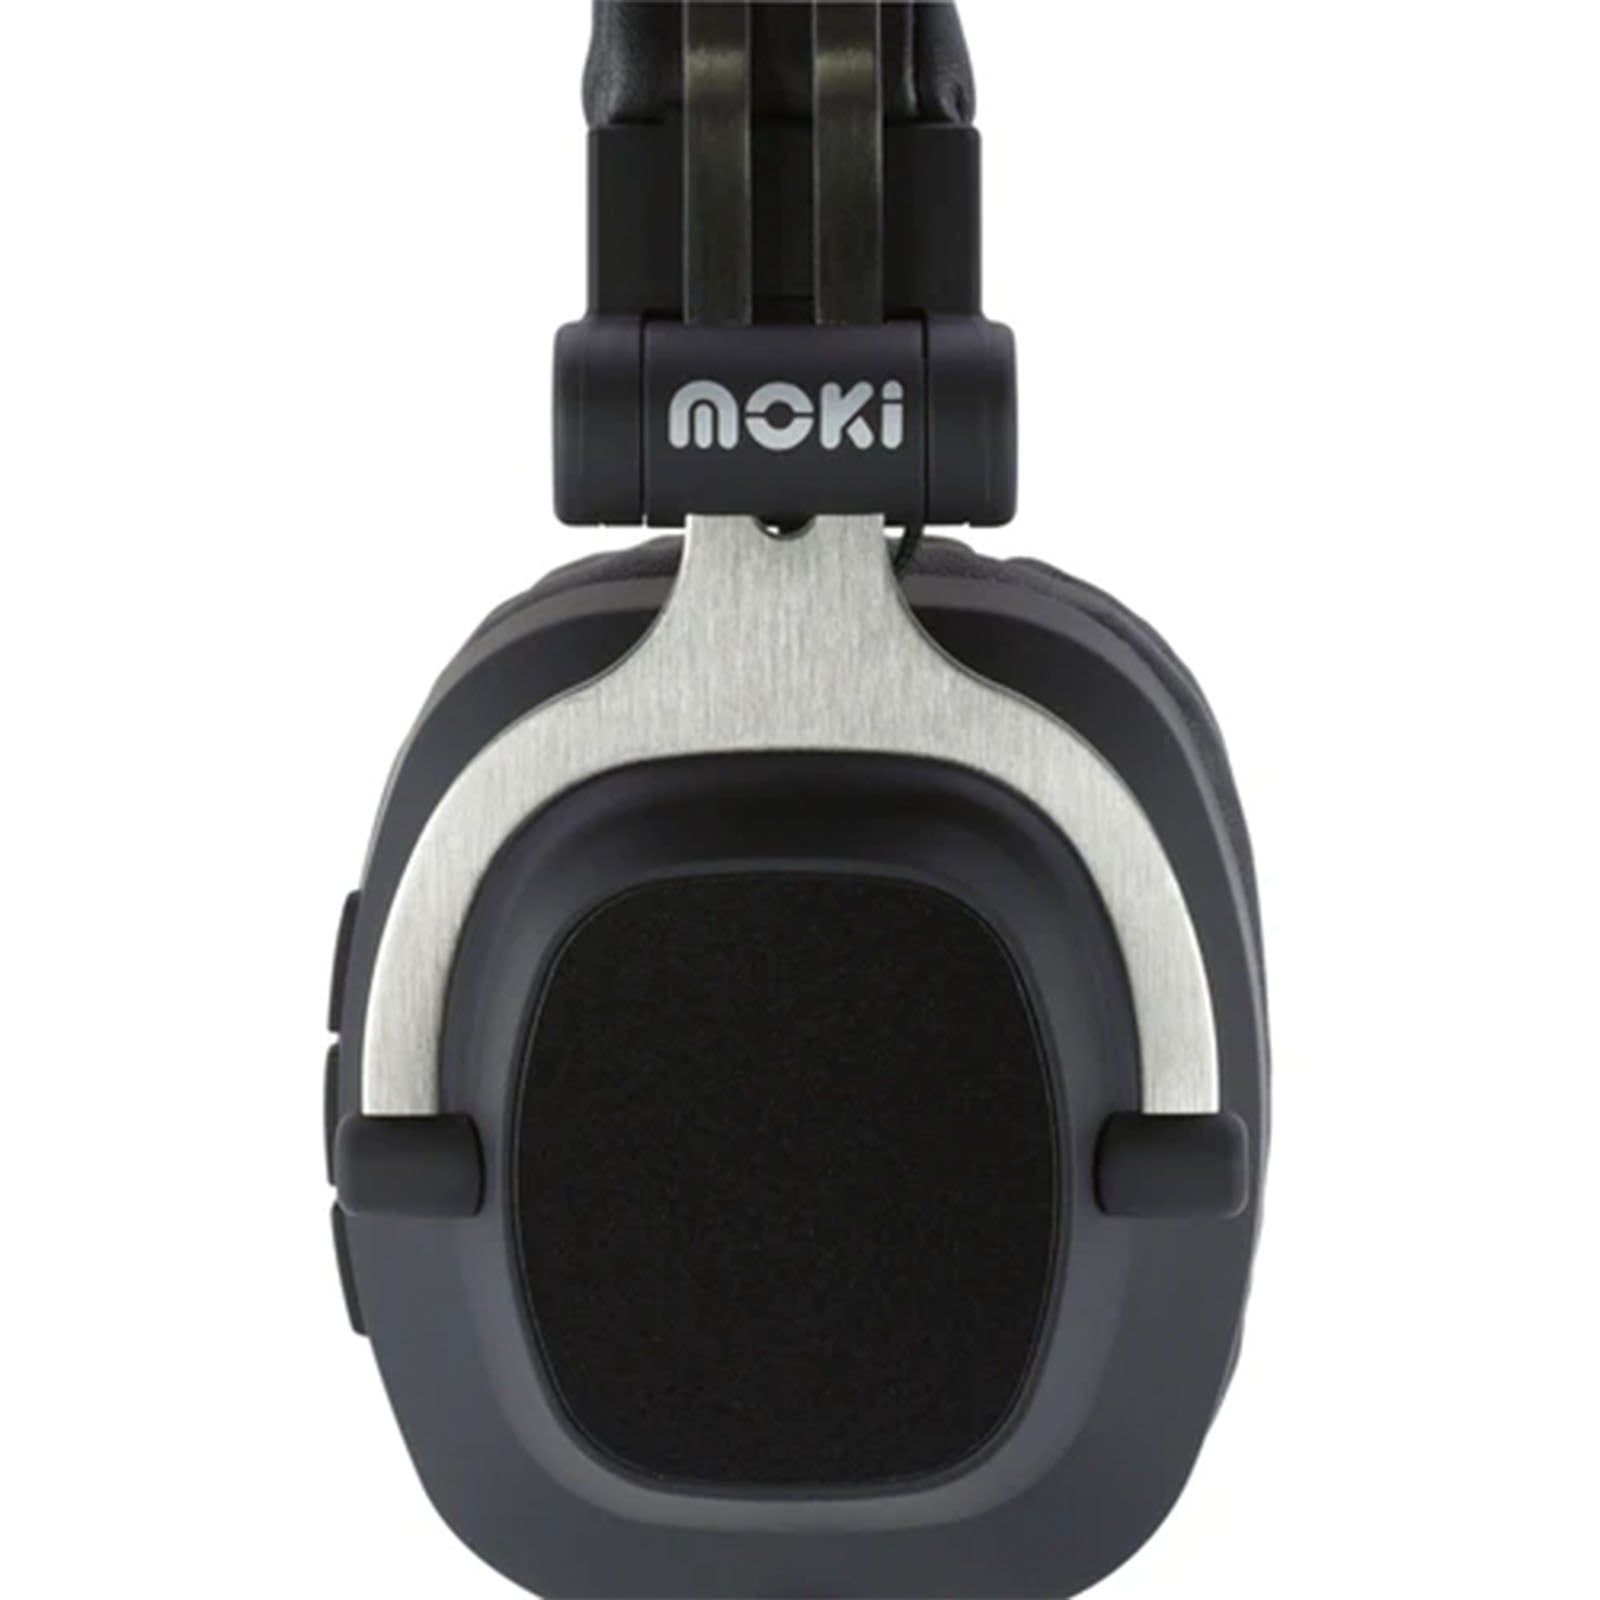 Moki EXO Double Black Wireless Headphones